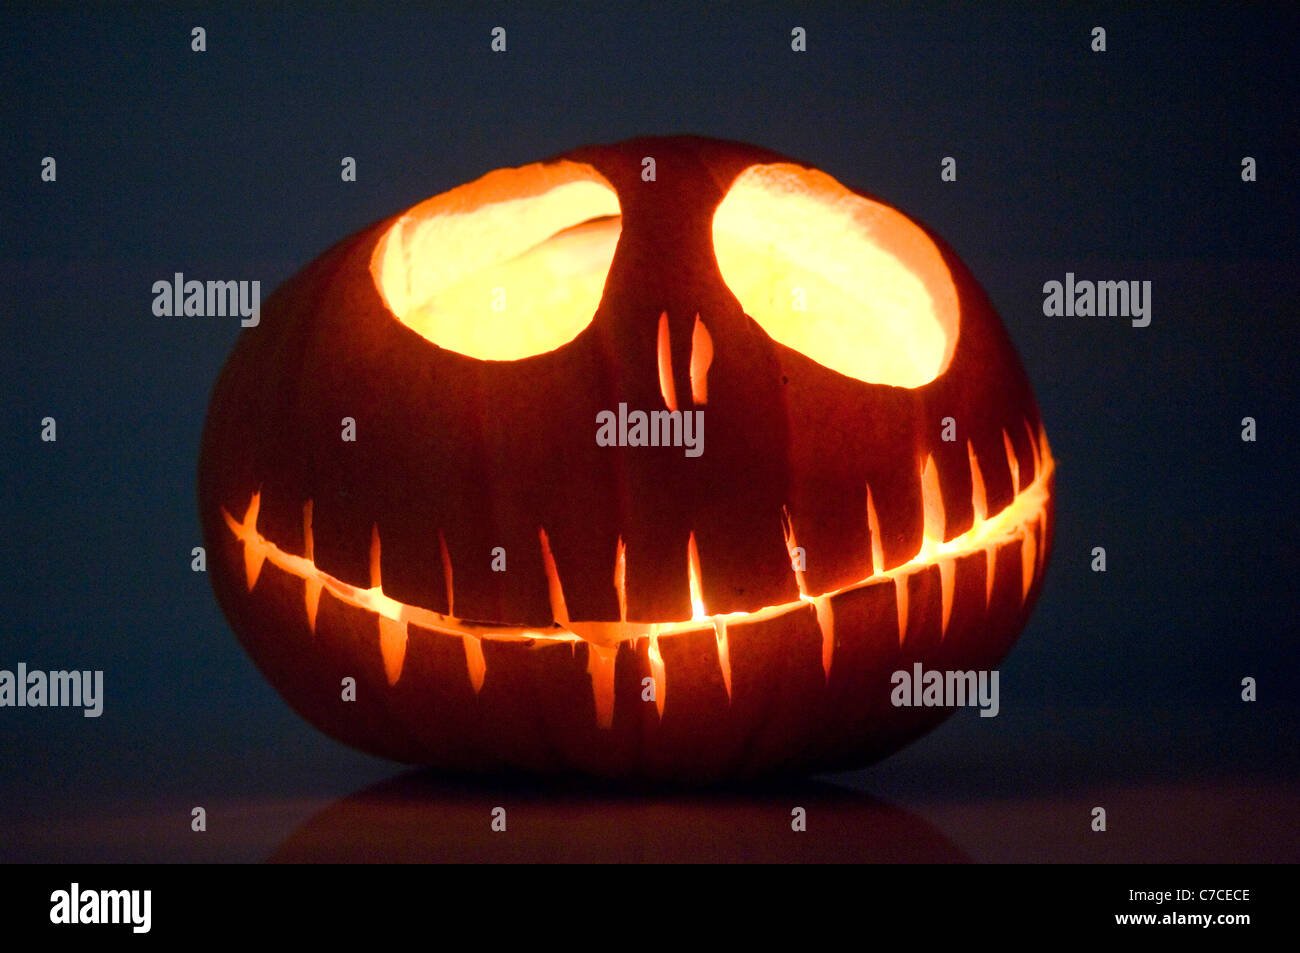 Tim burton pumpkin hi-res stock photography and images - Alamy